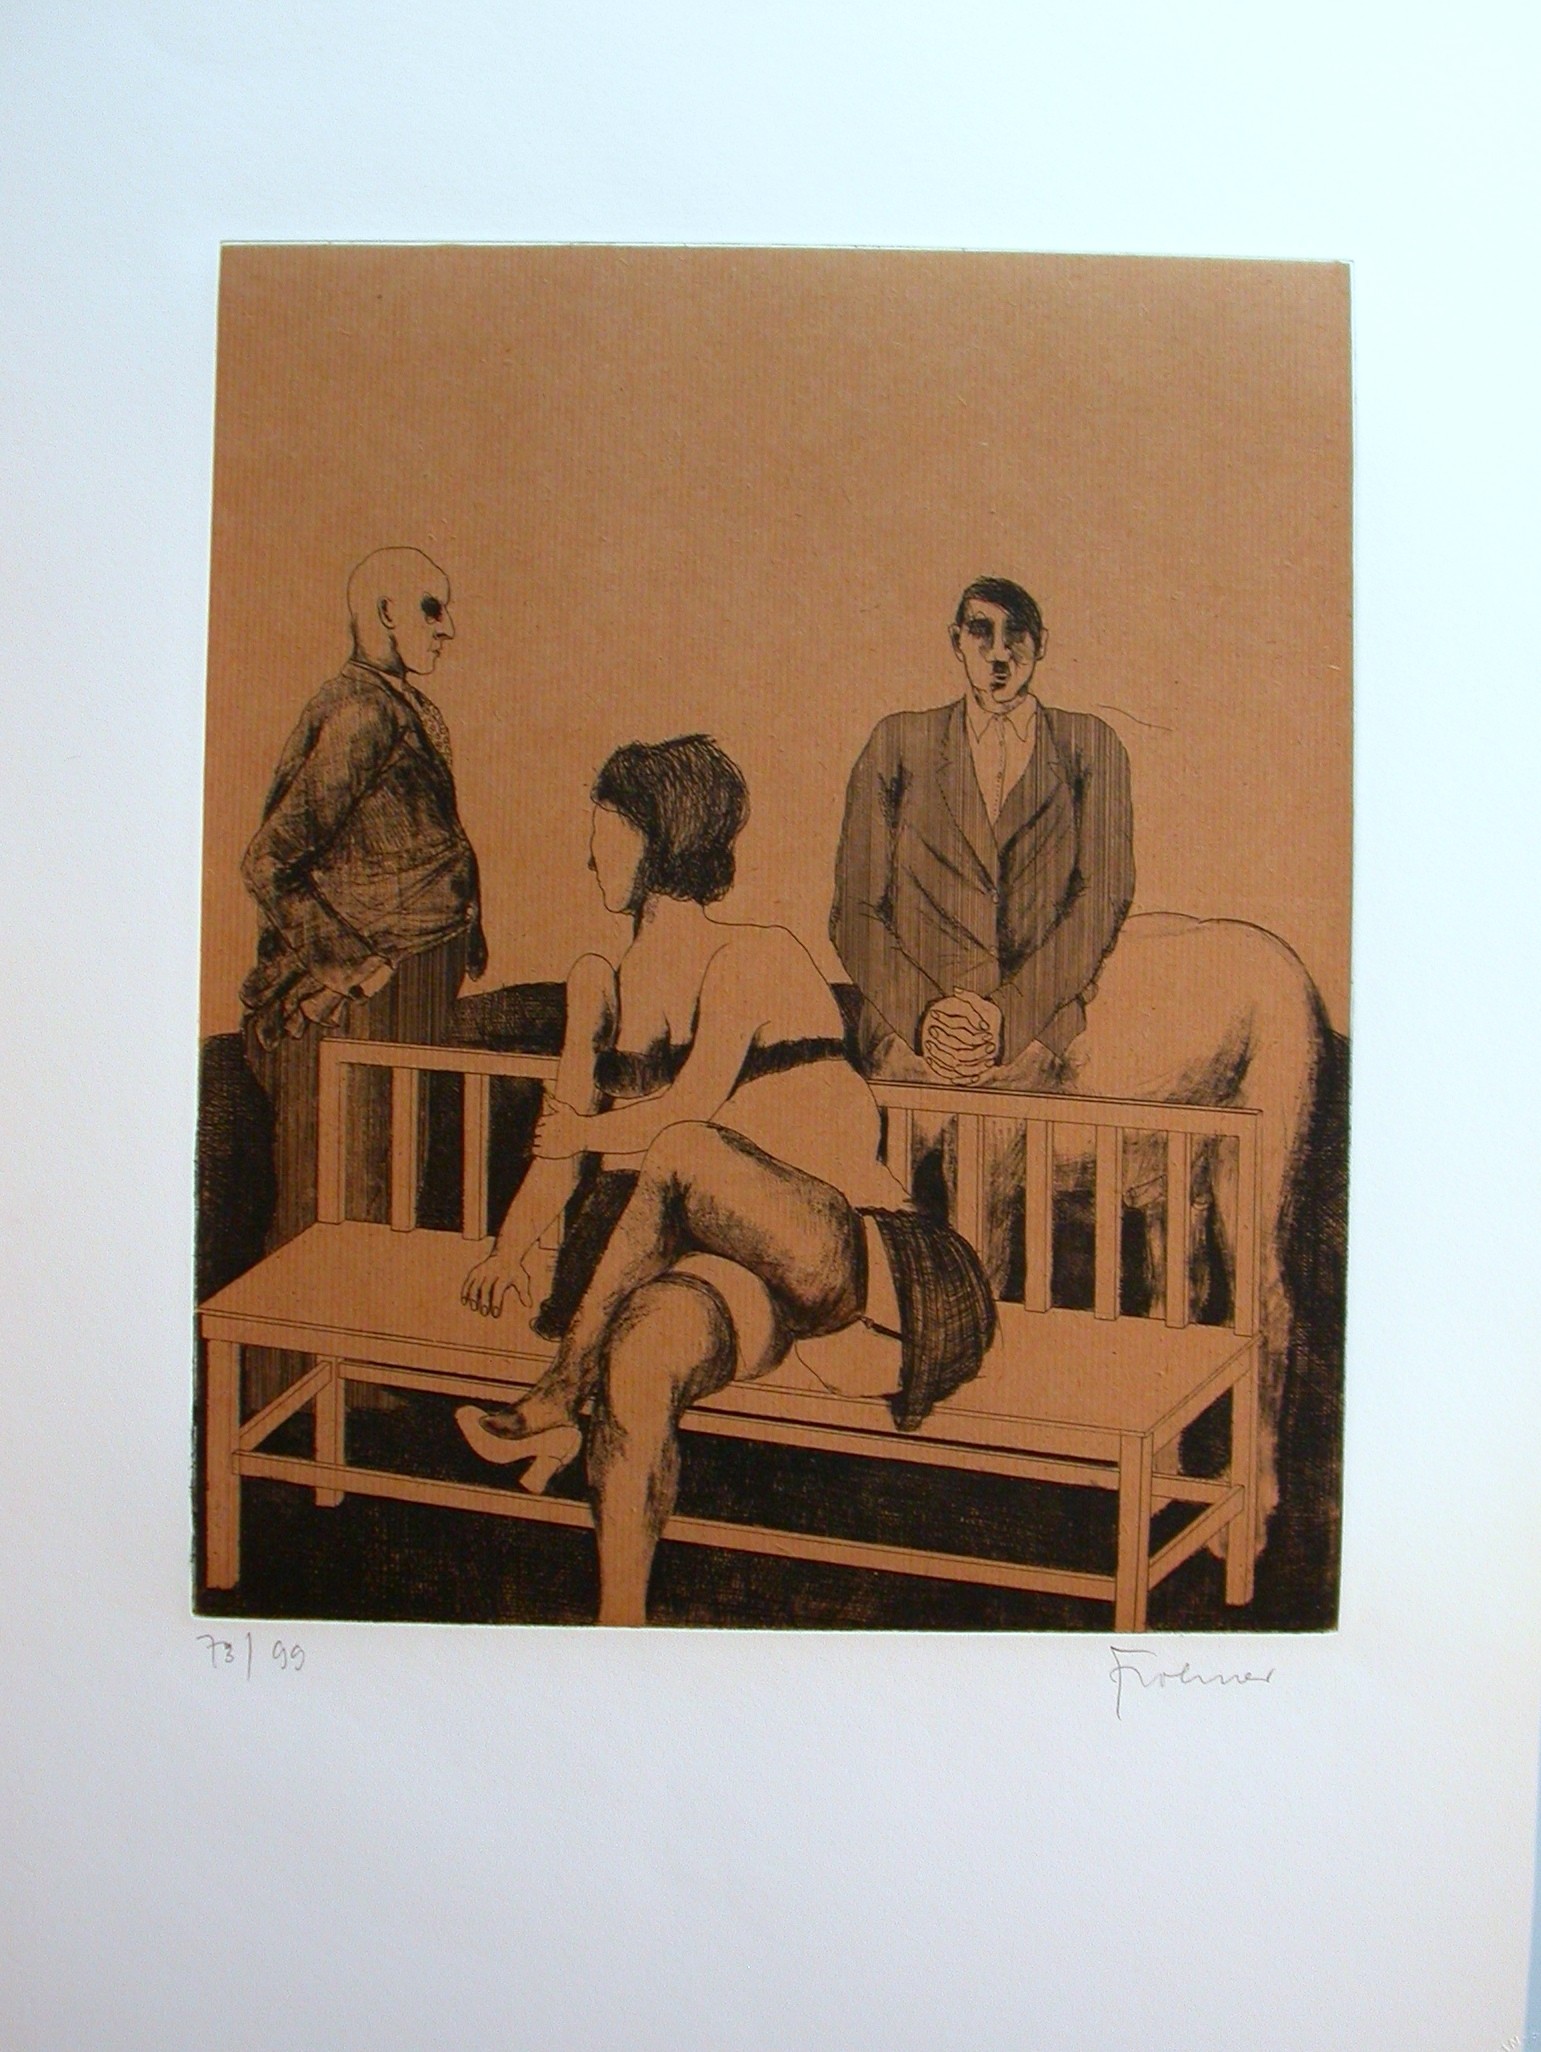  Frohner (1934 - 2007) "Frau auf einer Bank sitzend"